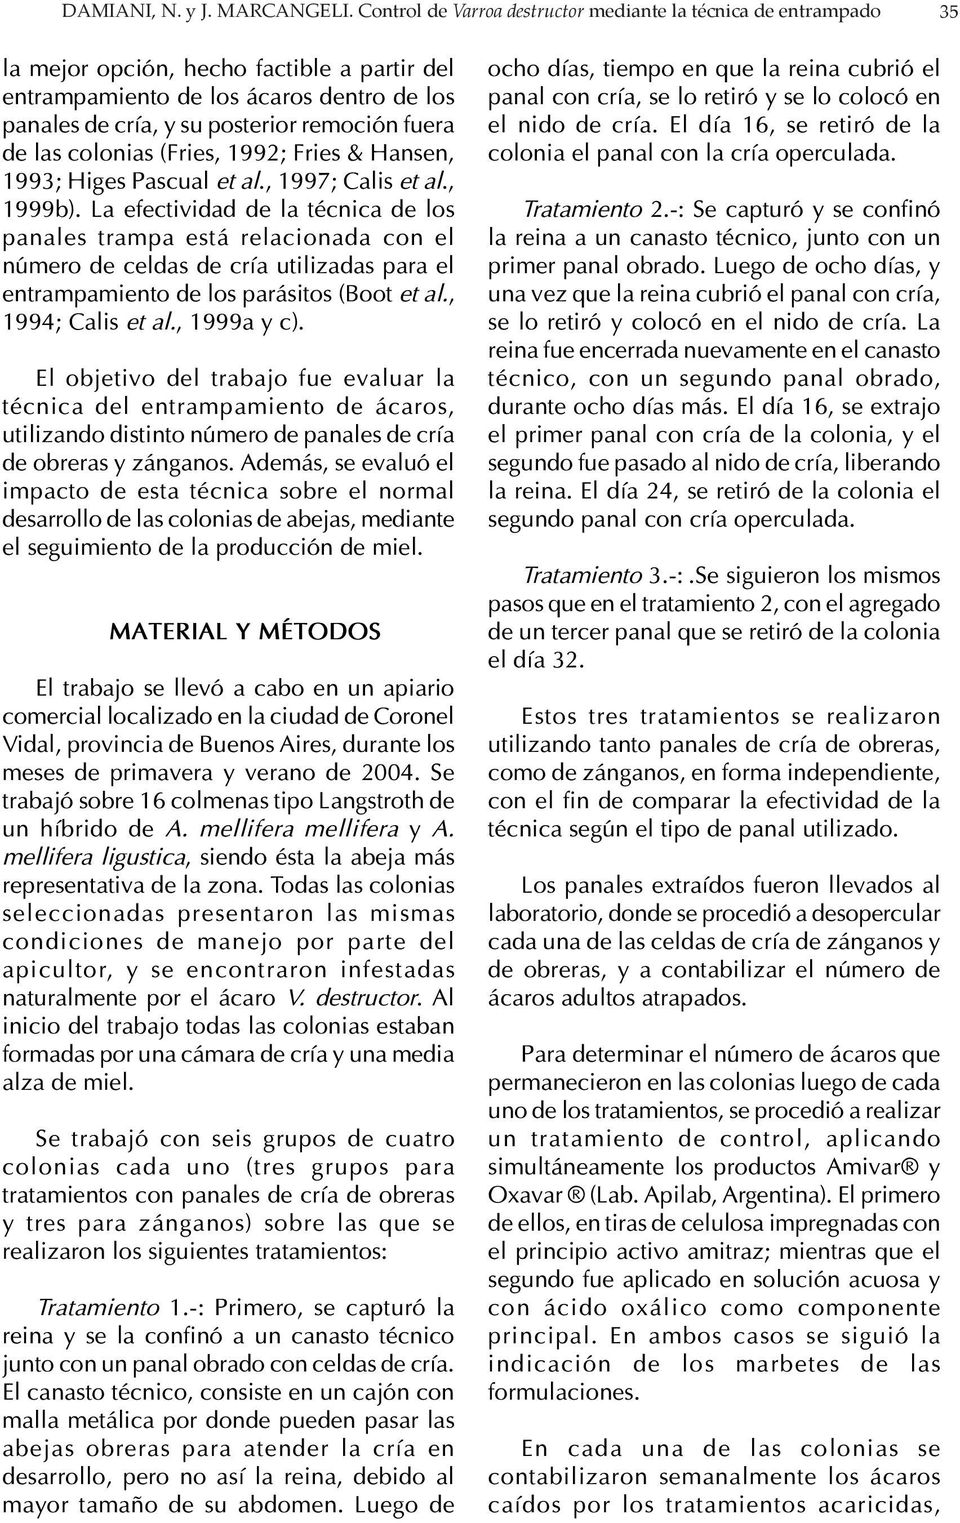 fuera de las colonias (Fries, 1992; Fries & Hansen, 1993; Higes Pascual et al., 1997; Calis et al., 1999b).